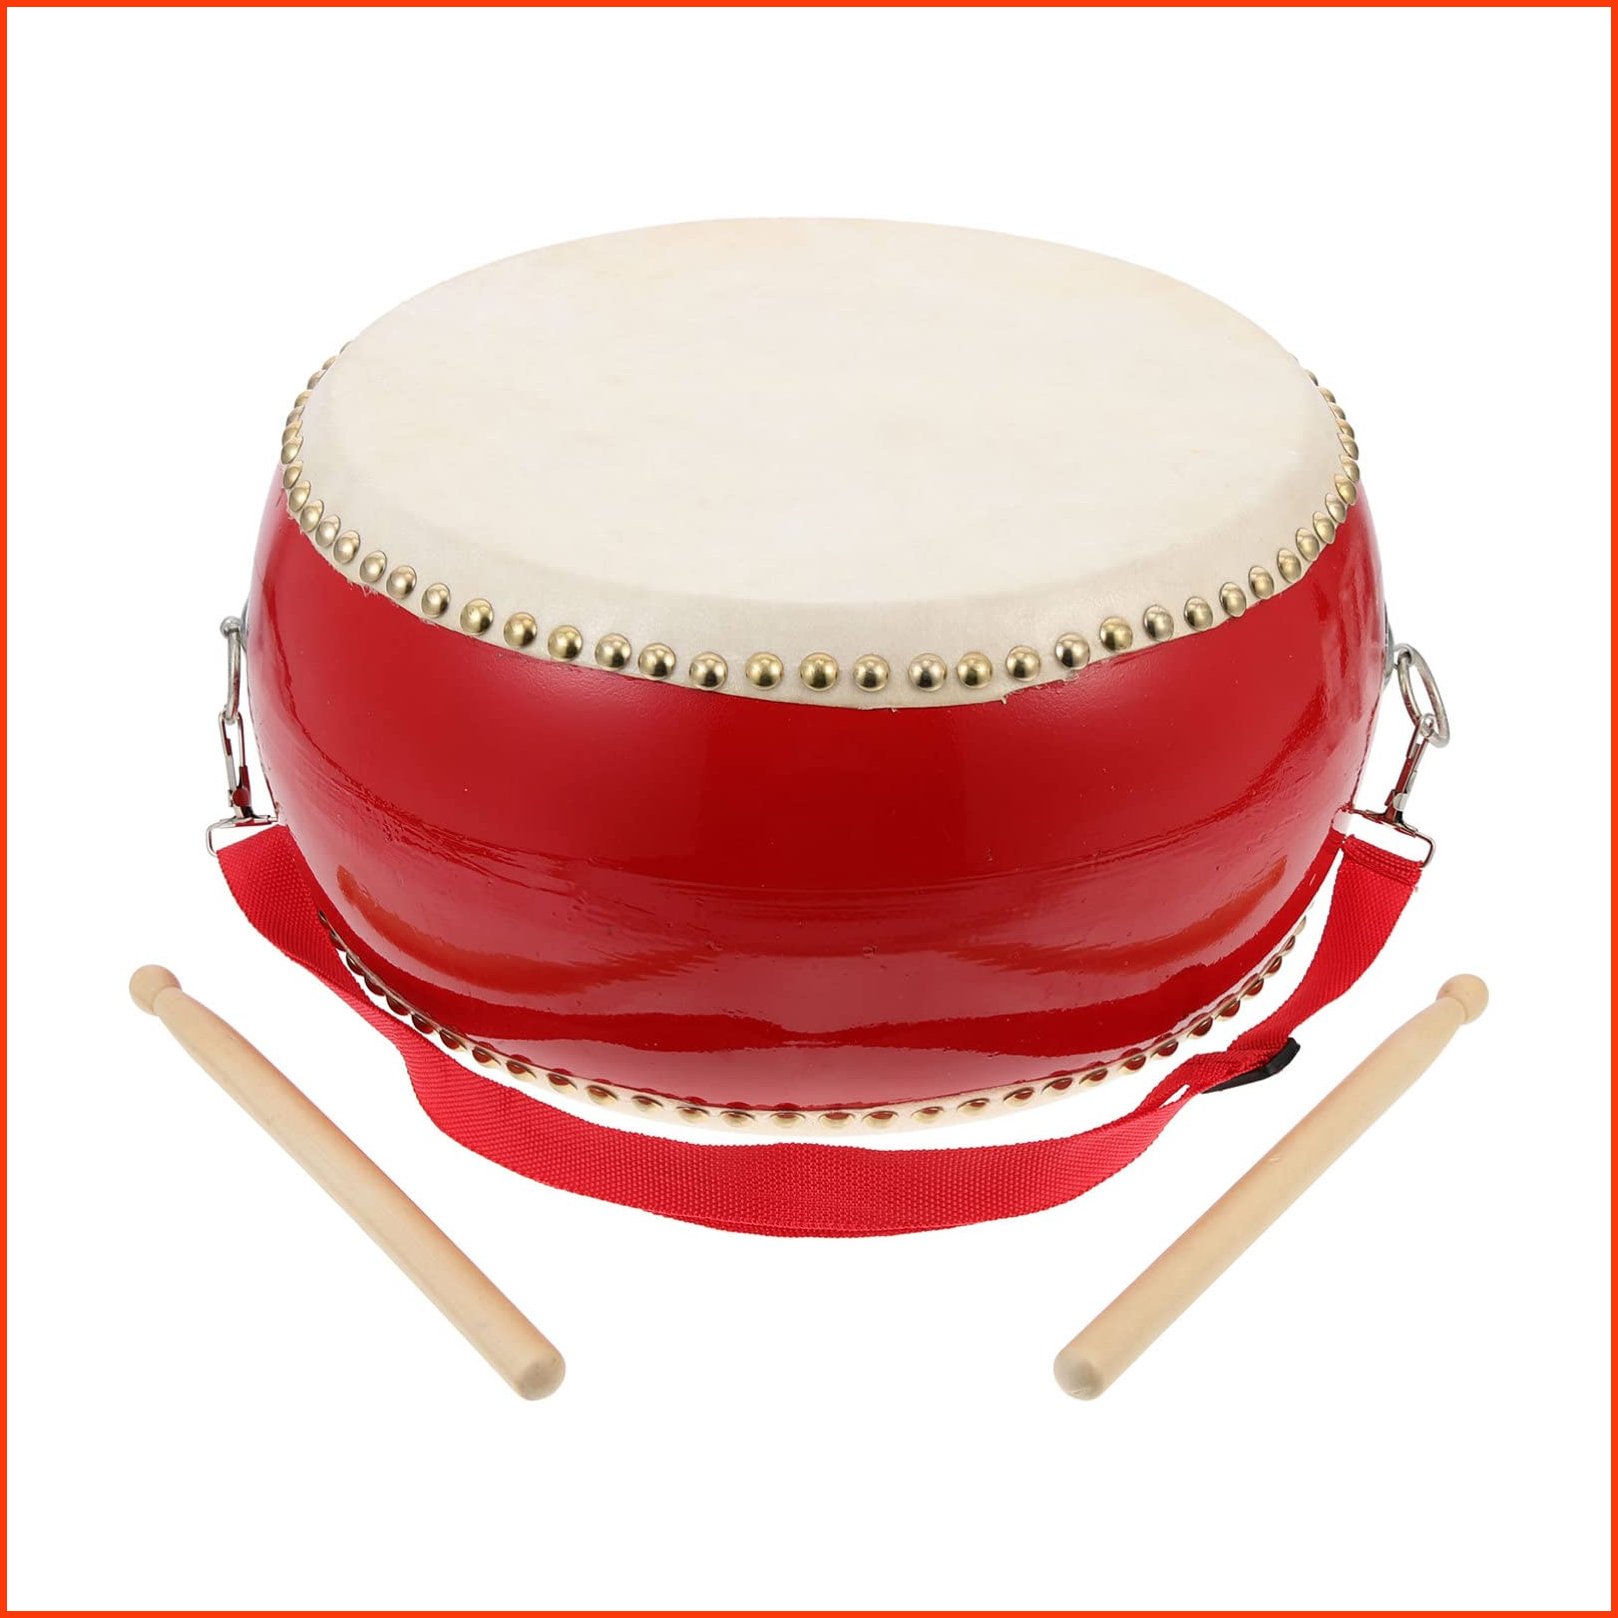 並行輸入品Tambourine Chinese Drum Drum 1 Set of Wooden Children Percussion Drums Cowhide Drum for Kids Music Education U